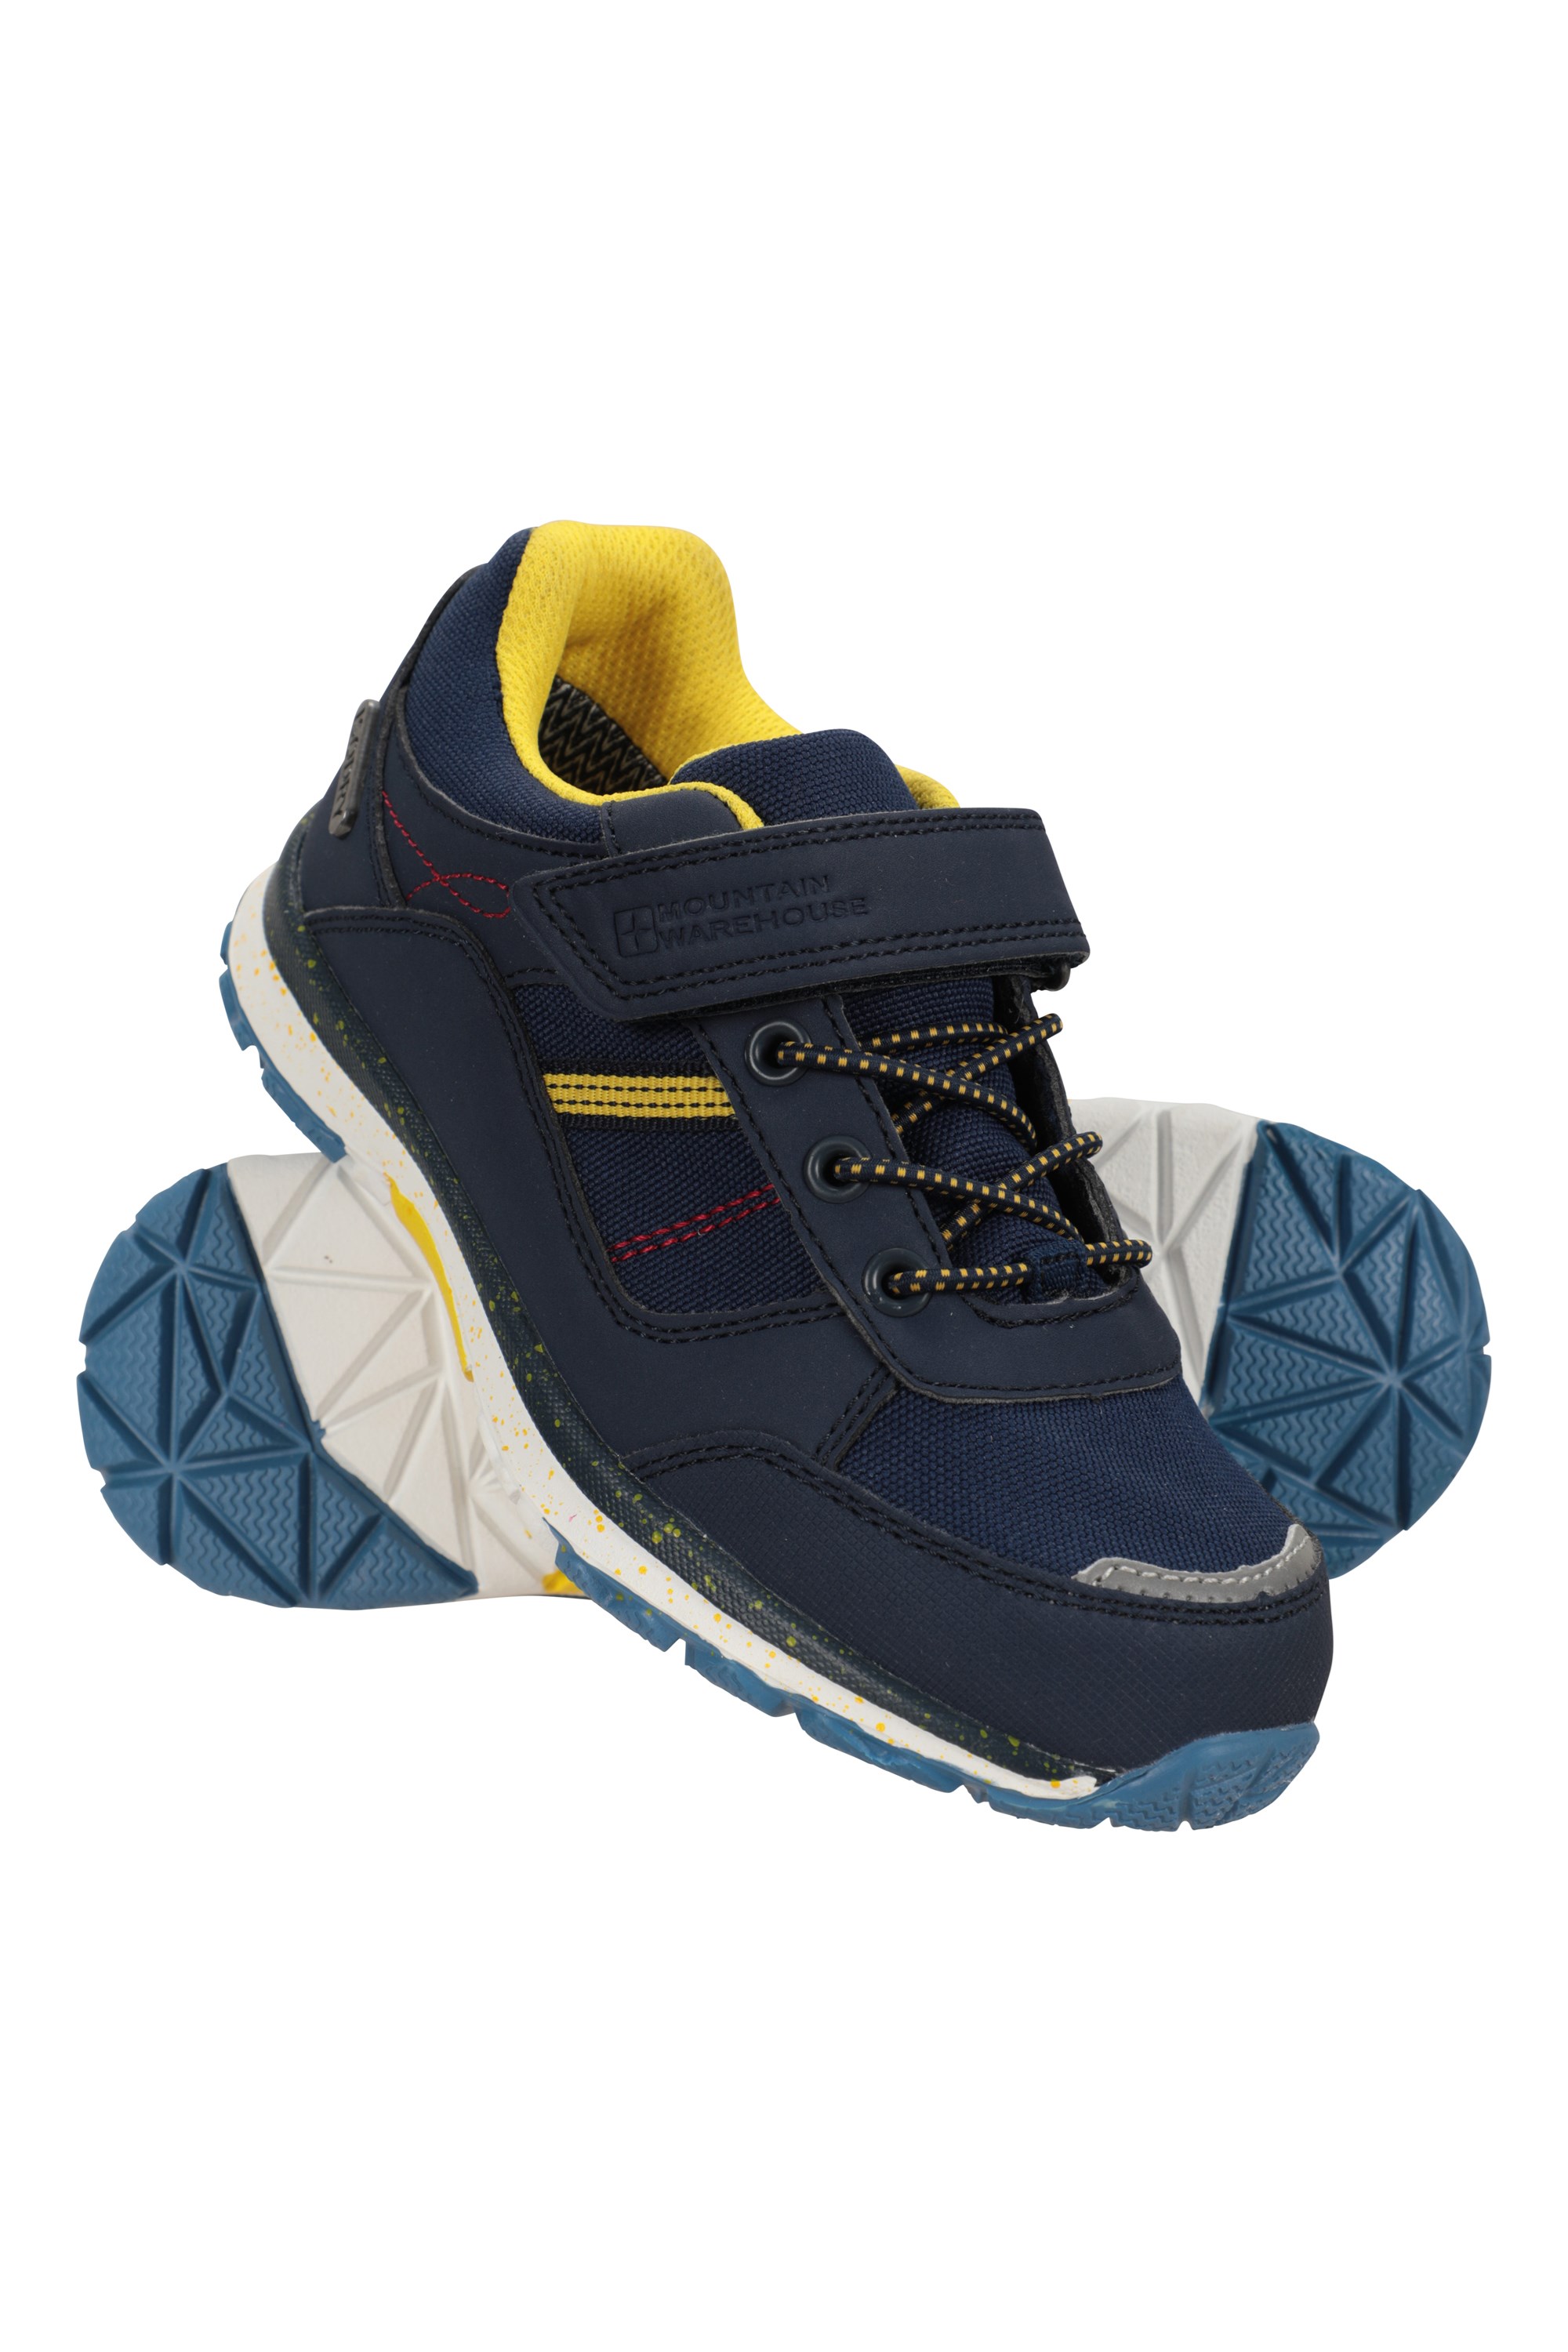 Oak dziecięce wodoodporne buty trekkingowe - Navy